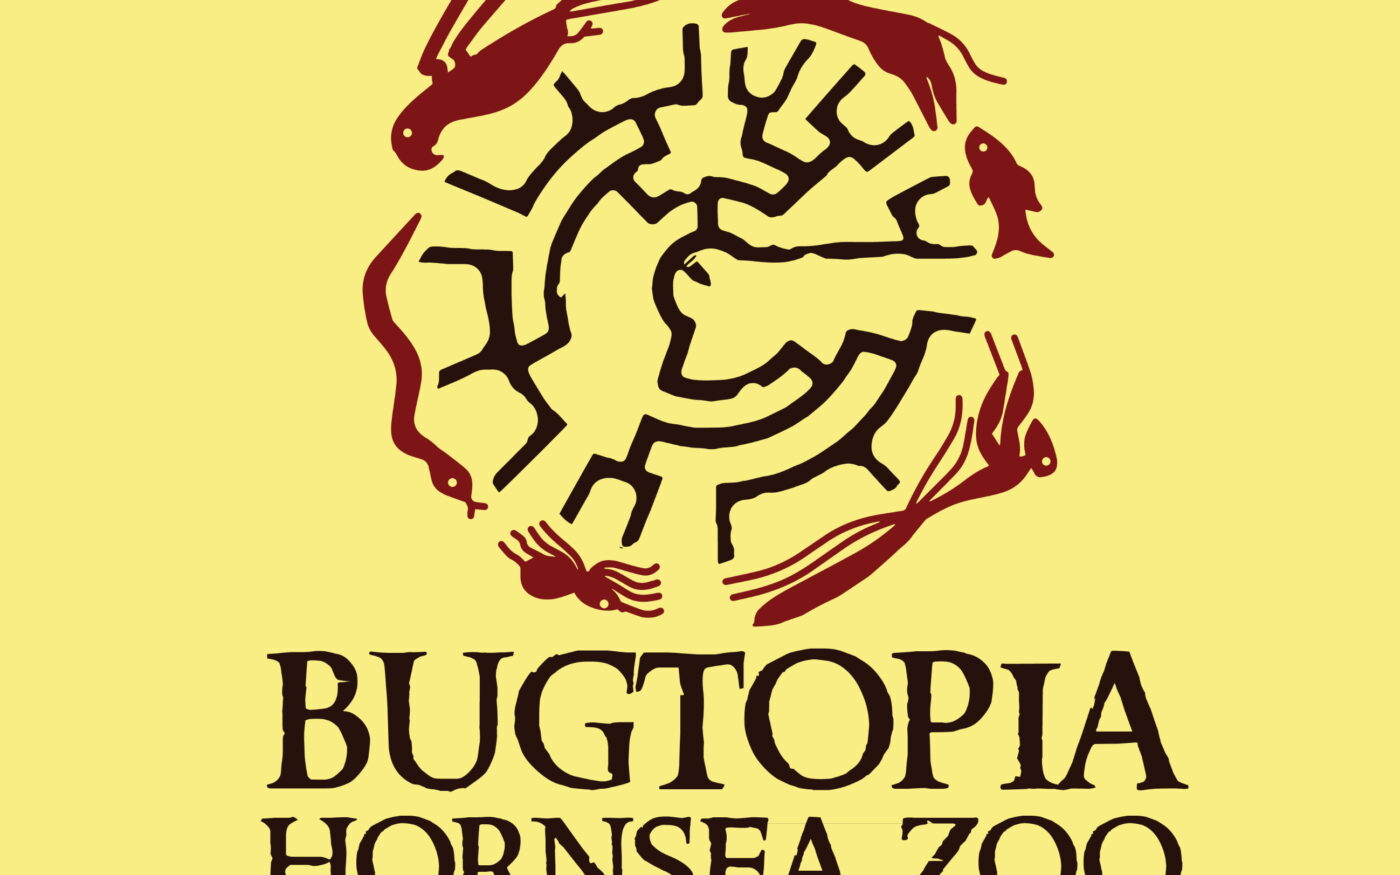 Bugtopia Hornsea Zoo logo